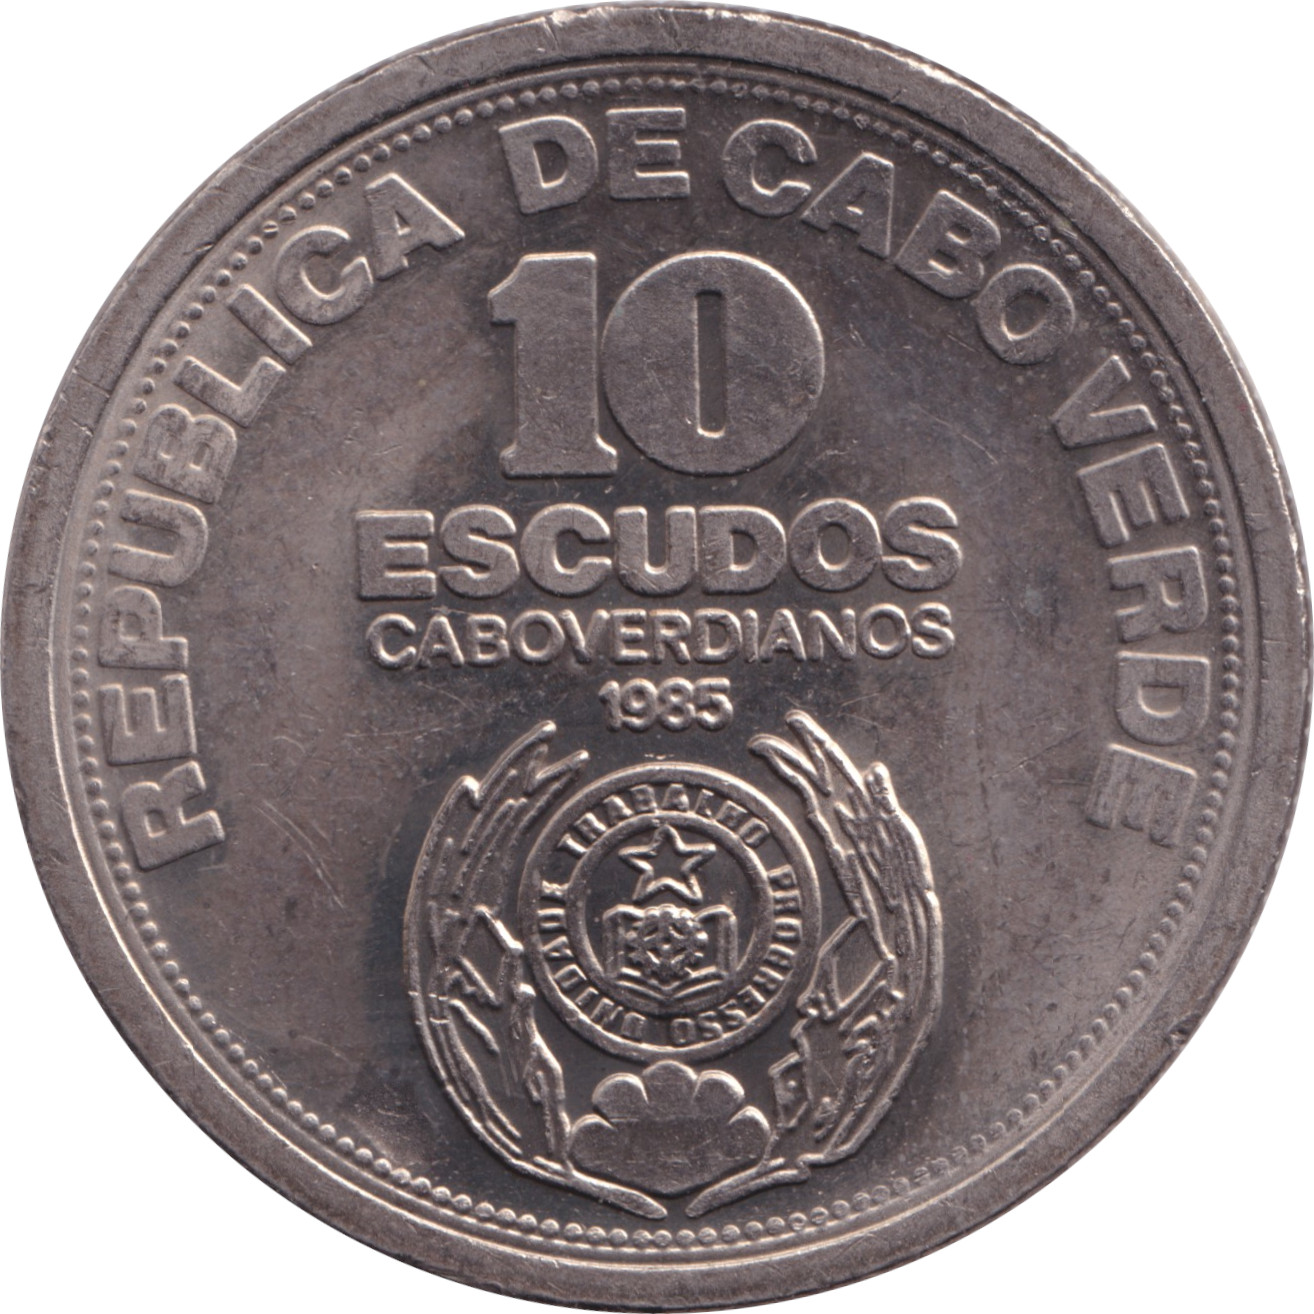 10 escudos - Indépendance - 10 years